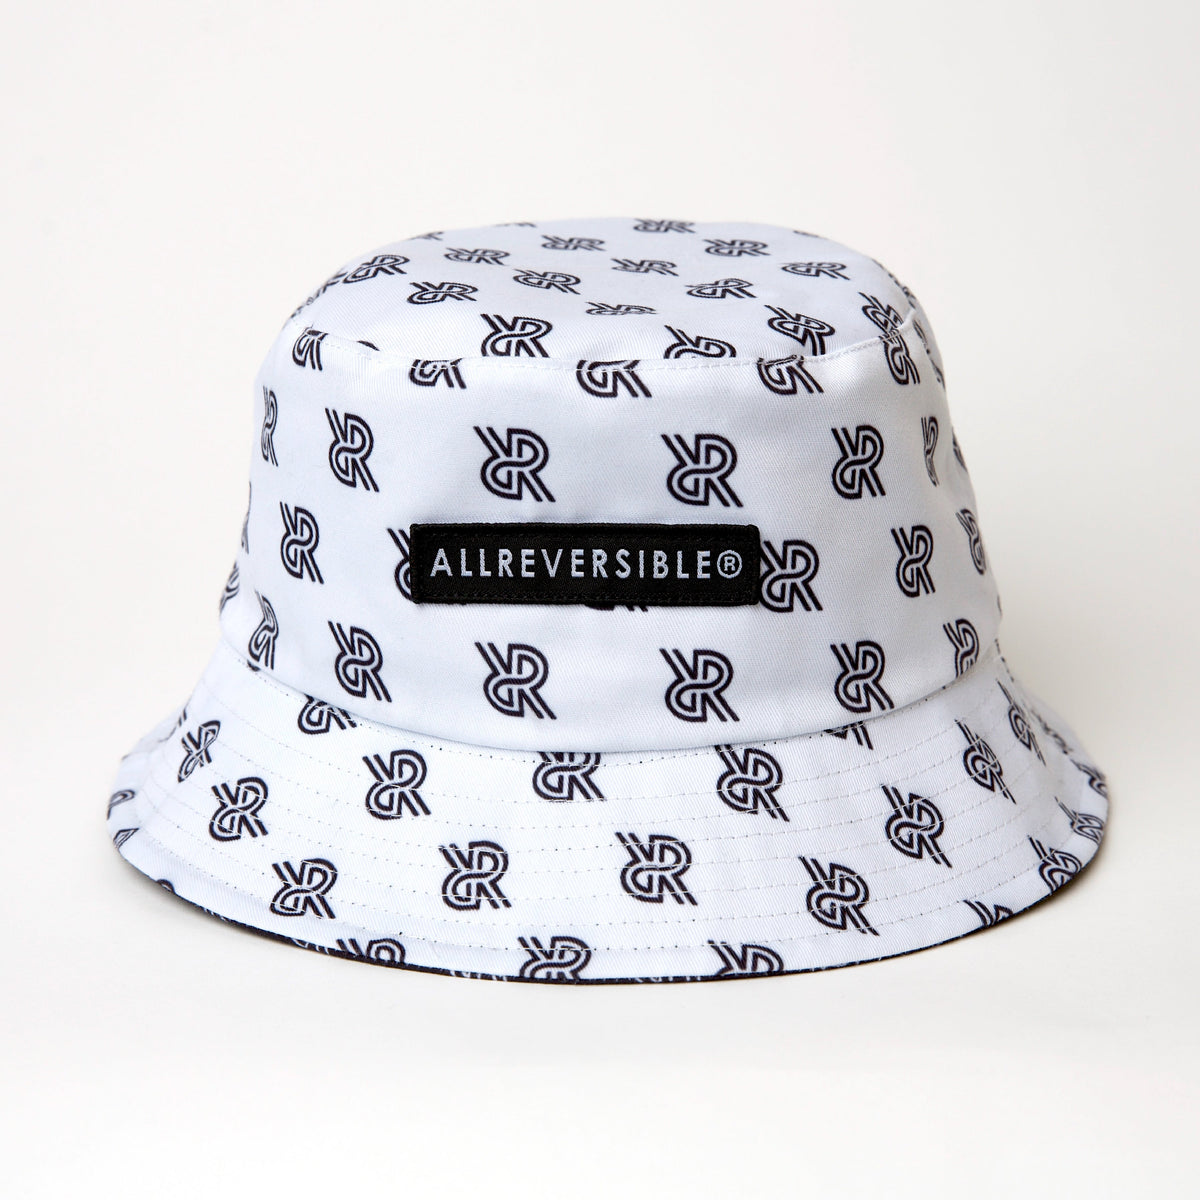 Reversible Bucket Hat - Black - ALLREVERSIBLE® White and